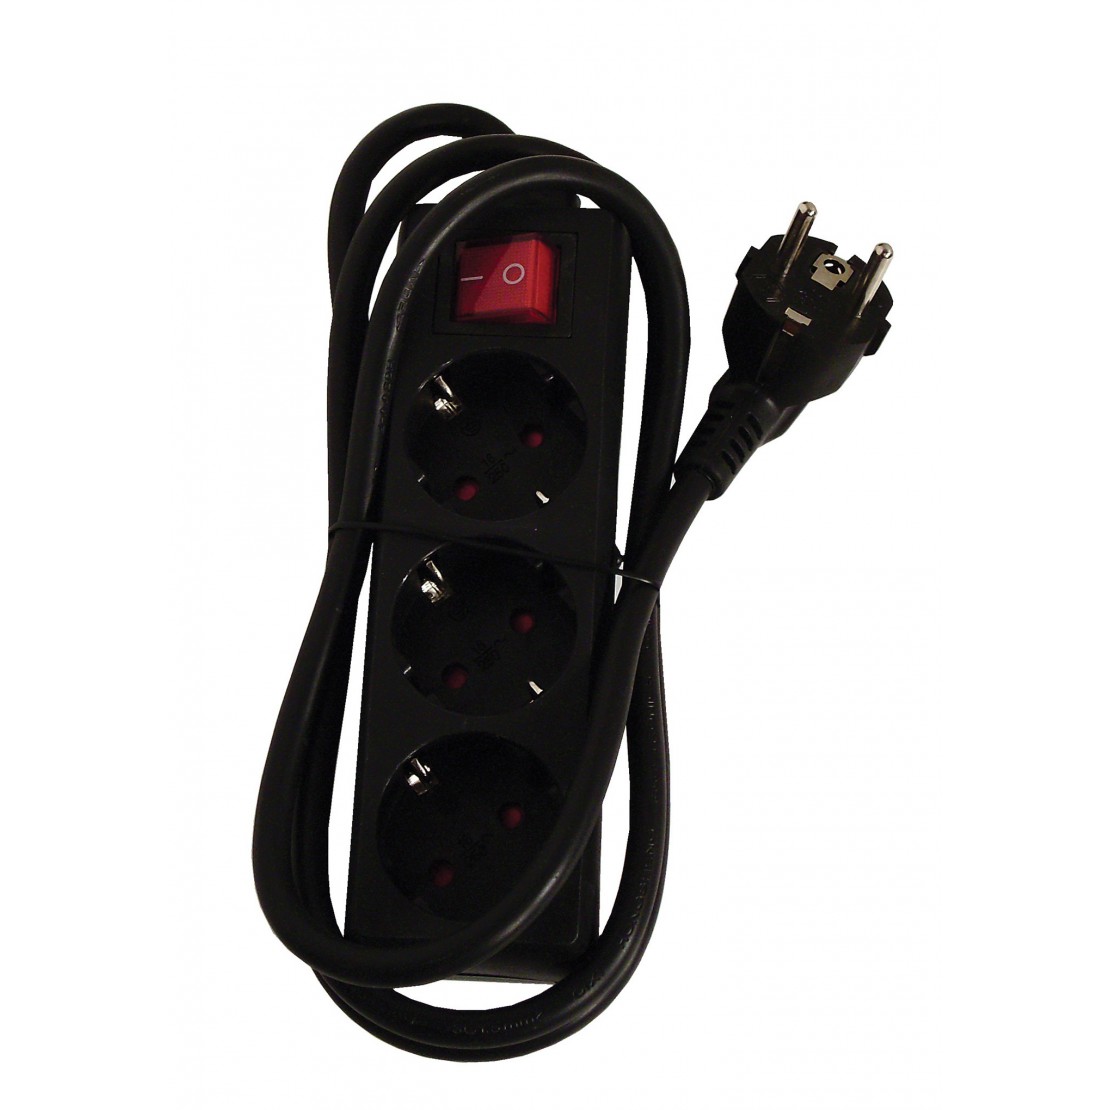 Multitprise noire 3 prises - 230V - Interrupteur lumineux